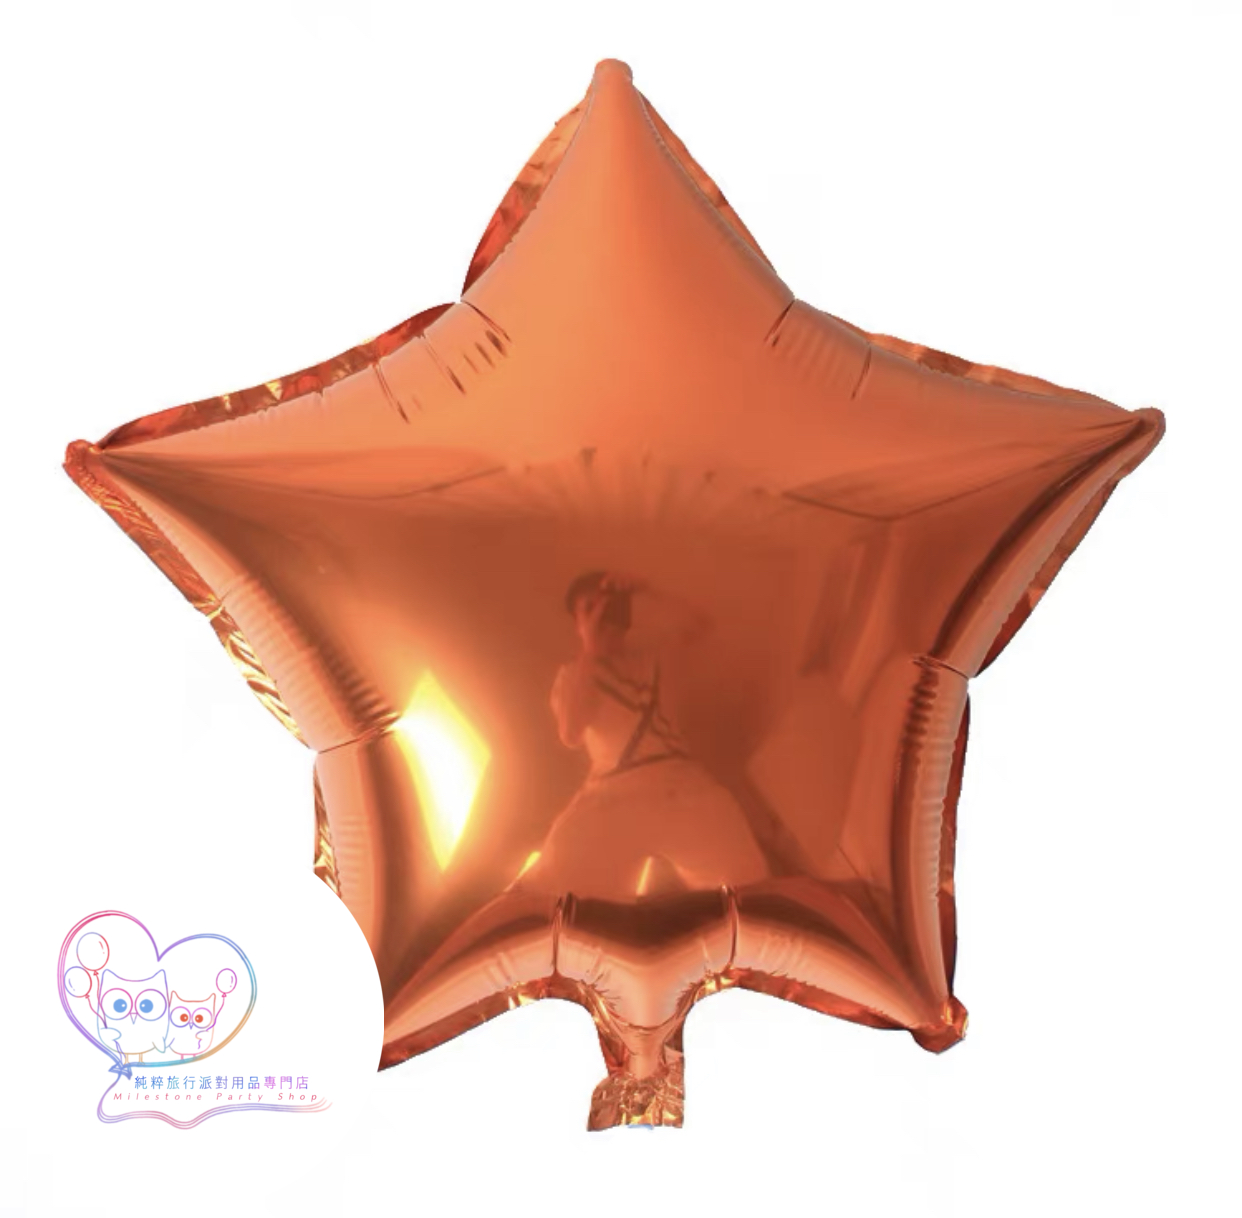 18吋星星鋁膜氣球 (橙色) 18S13